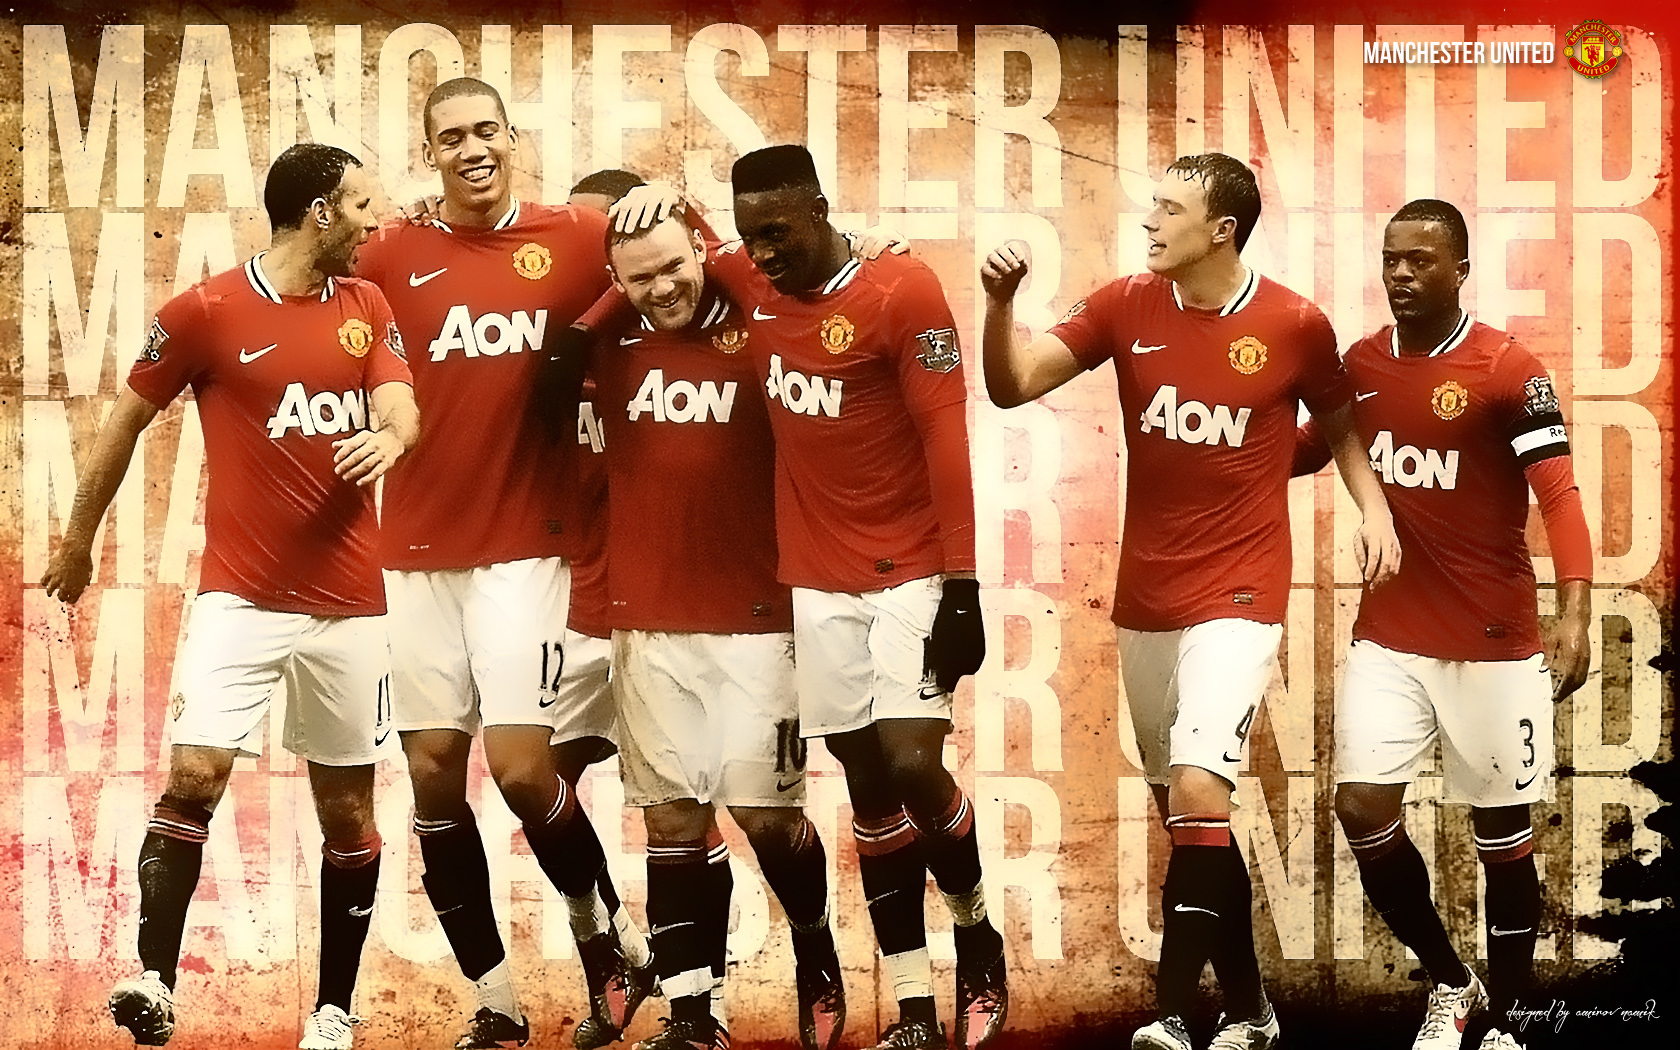 Download Wallpaper Manchester United 2012 678 Dikirim Oleh